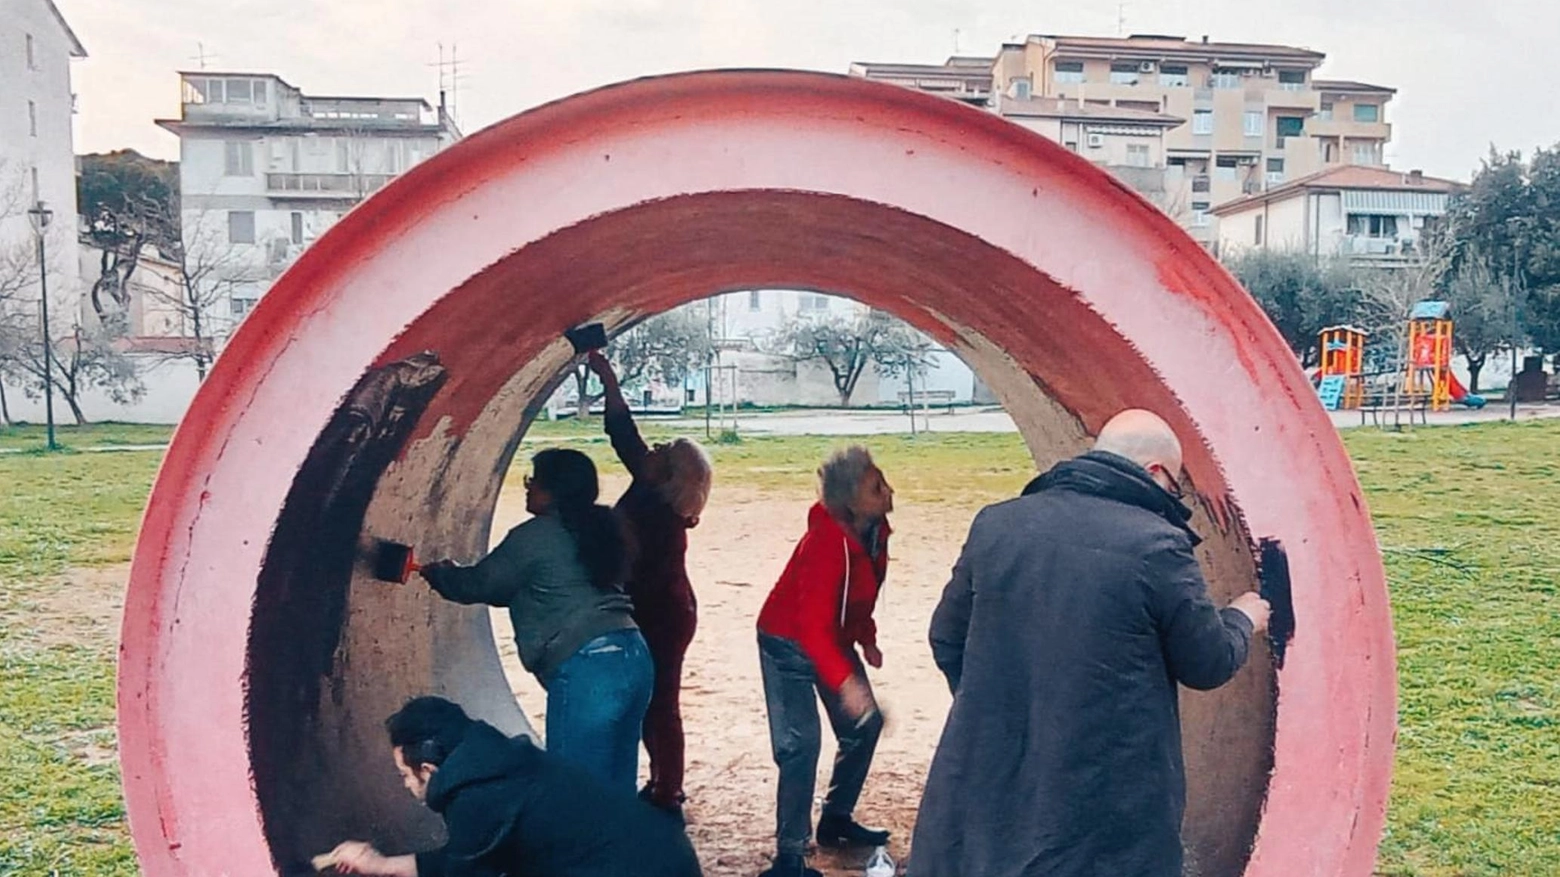 Omaggio a Joseph Beuys  Nel parco di Quinto  una nuova opera